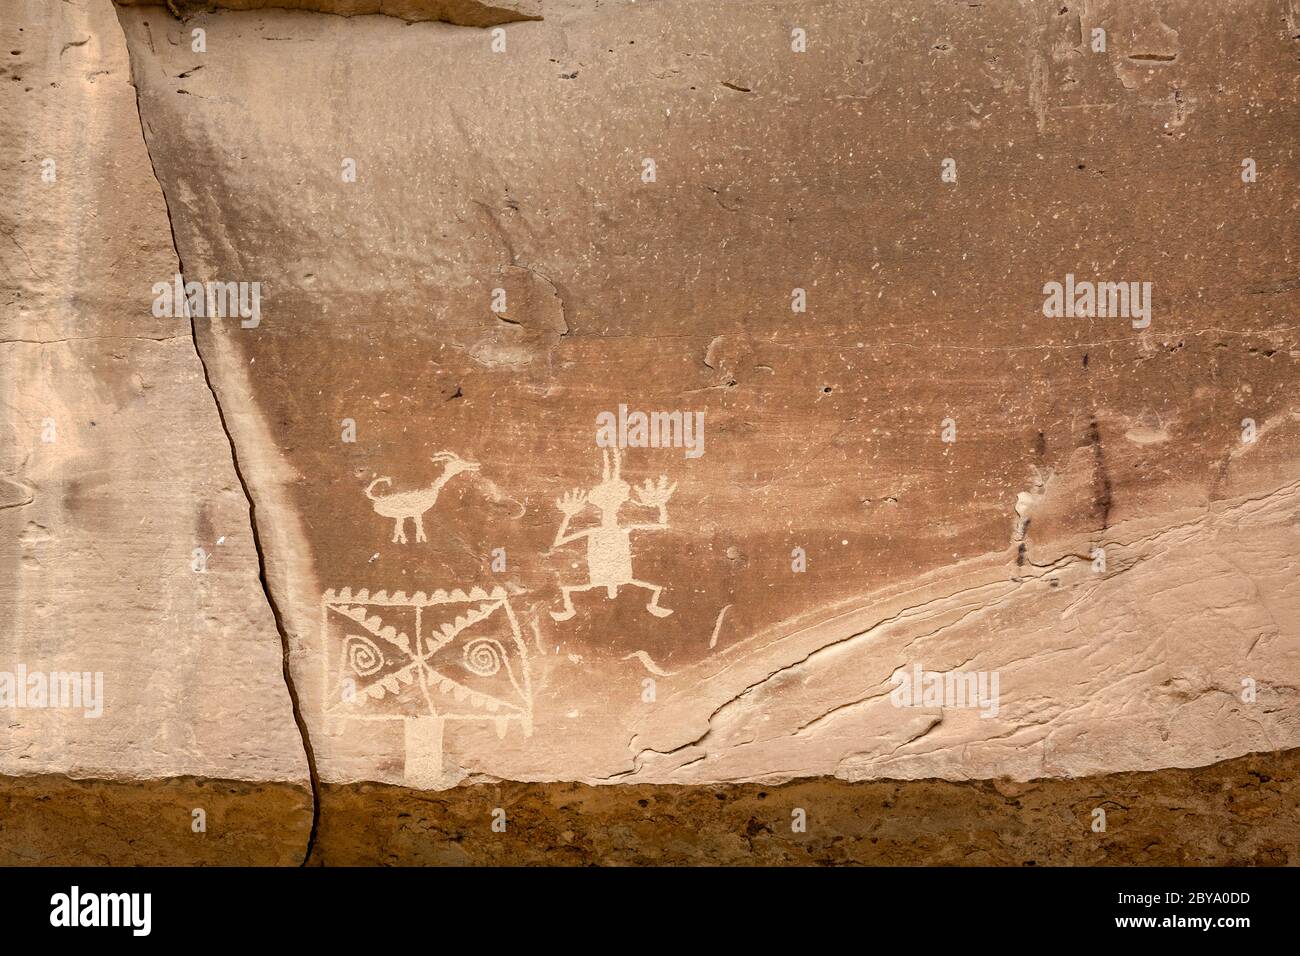 NM00607-00...NOUVEAU MEXIQUE - l'art rupestre le long de la piste de pétroglyphes montre un mouton glorin, une forme ou une autre d'une figure humaine et un masque katsina (surnaturel). C Banque D'Images